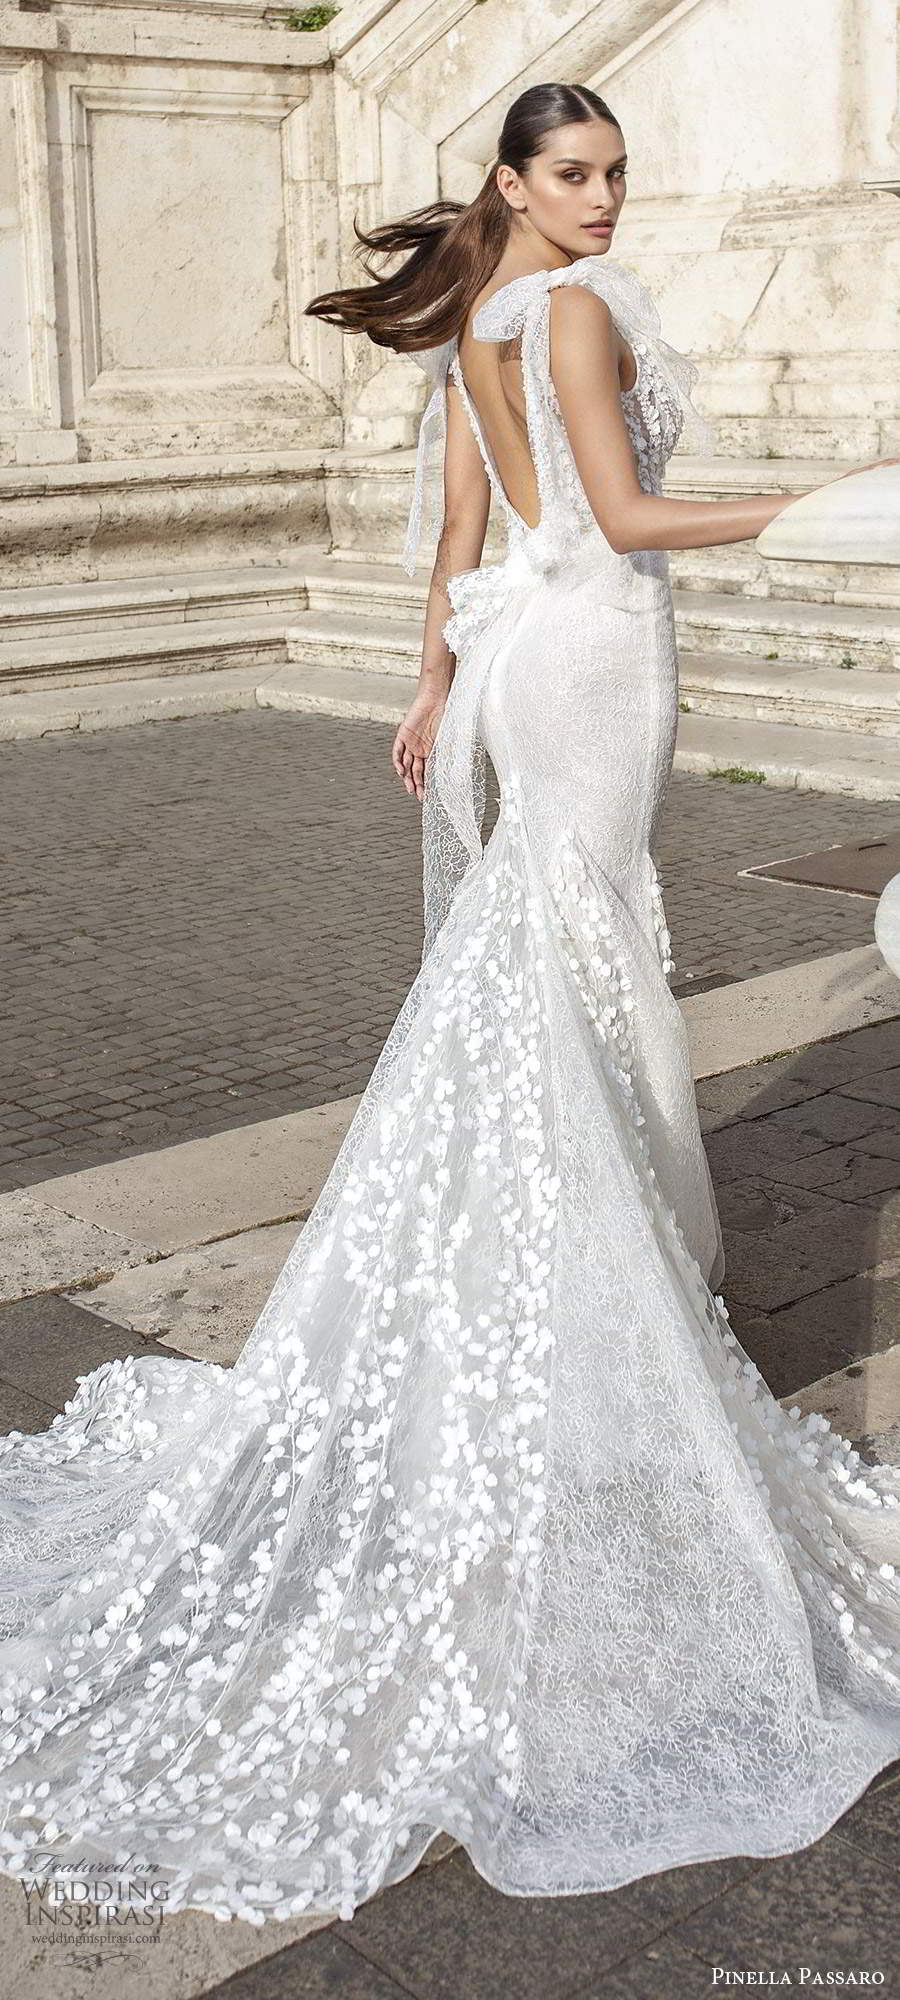 pinella passaro 2020 bridal sleeveless bow straps v neckline sheer bodice fully embellished lace fit flare mermaidsheath wedding dress scoop back chapel train (8) bv